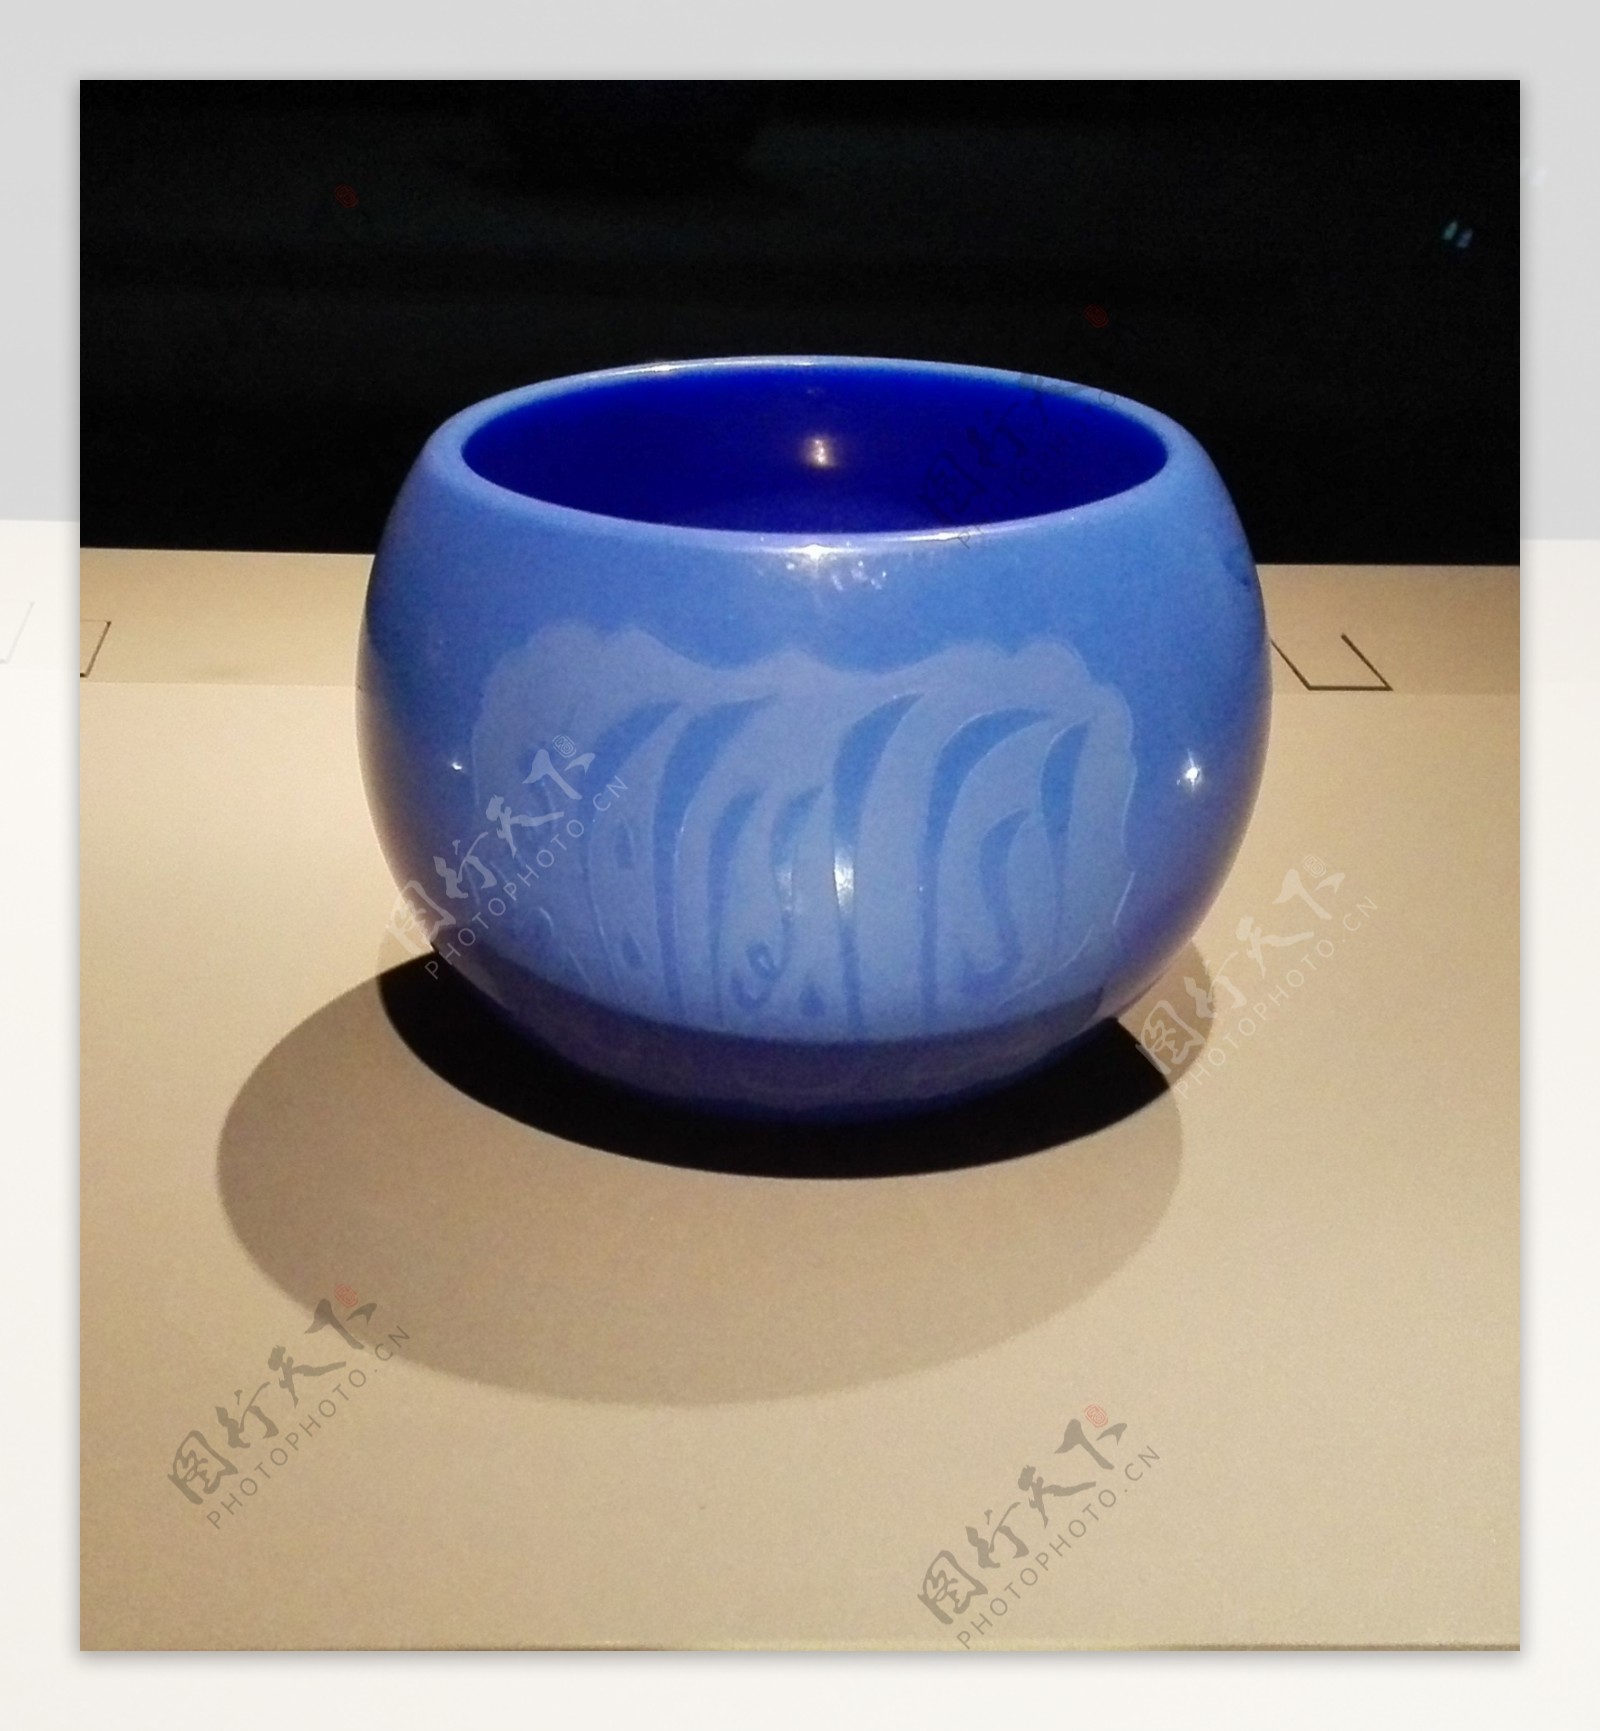 蓝色瓷碗